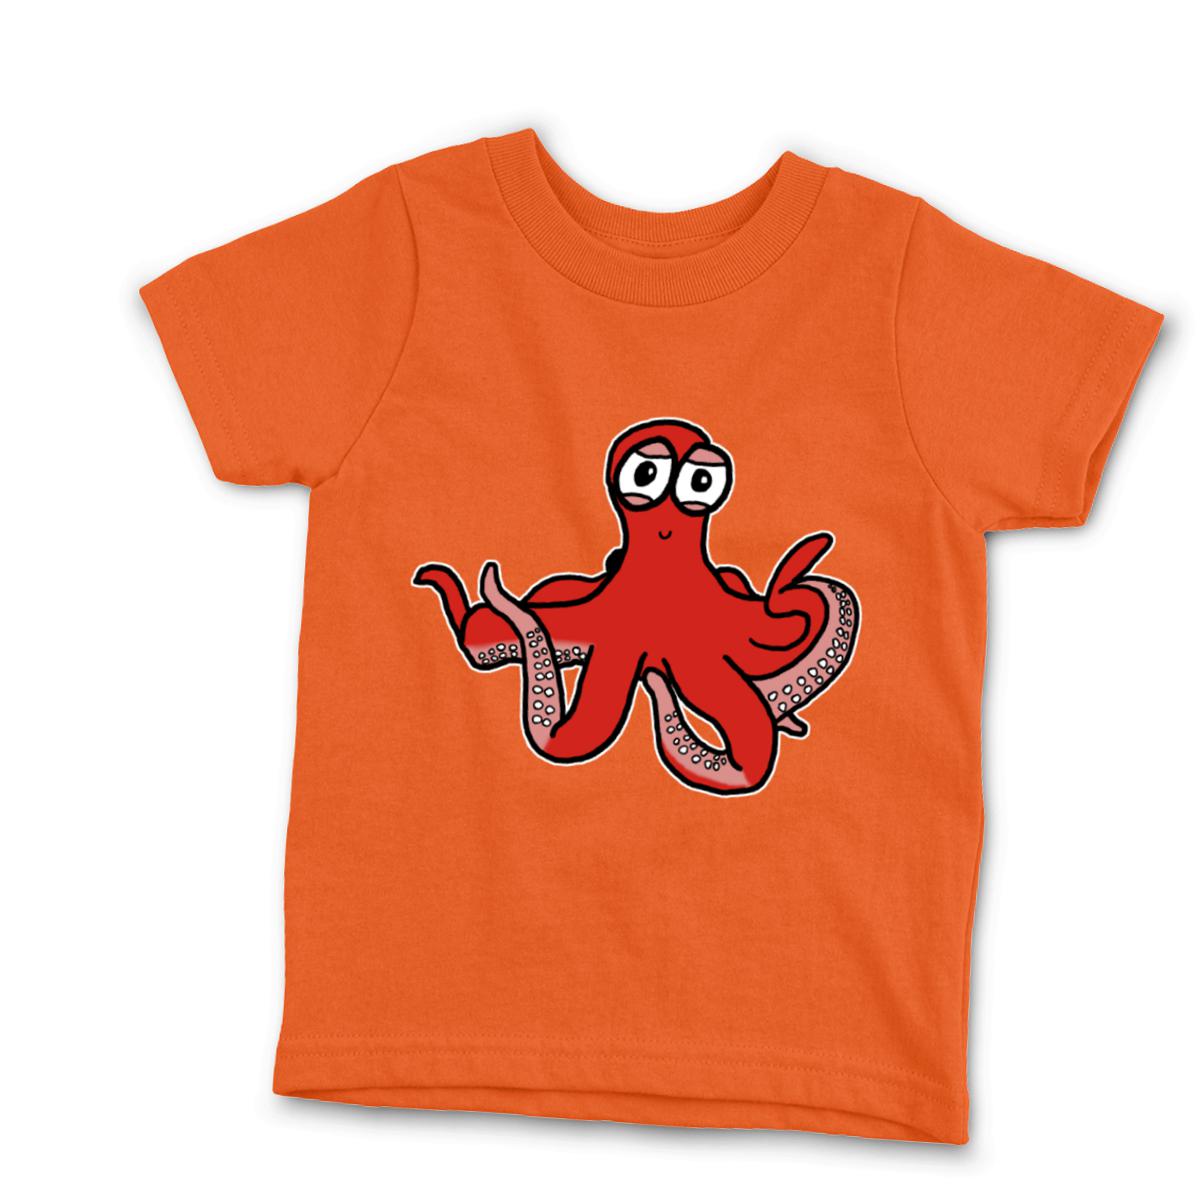 Octopus Kid's Tee Large orange